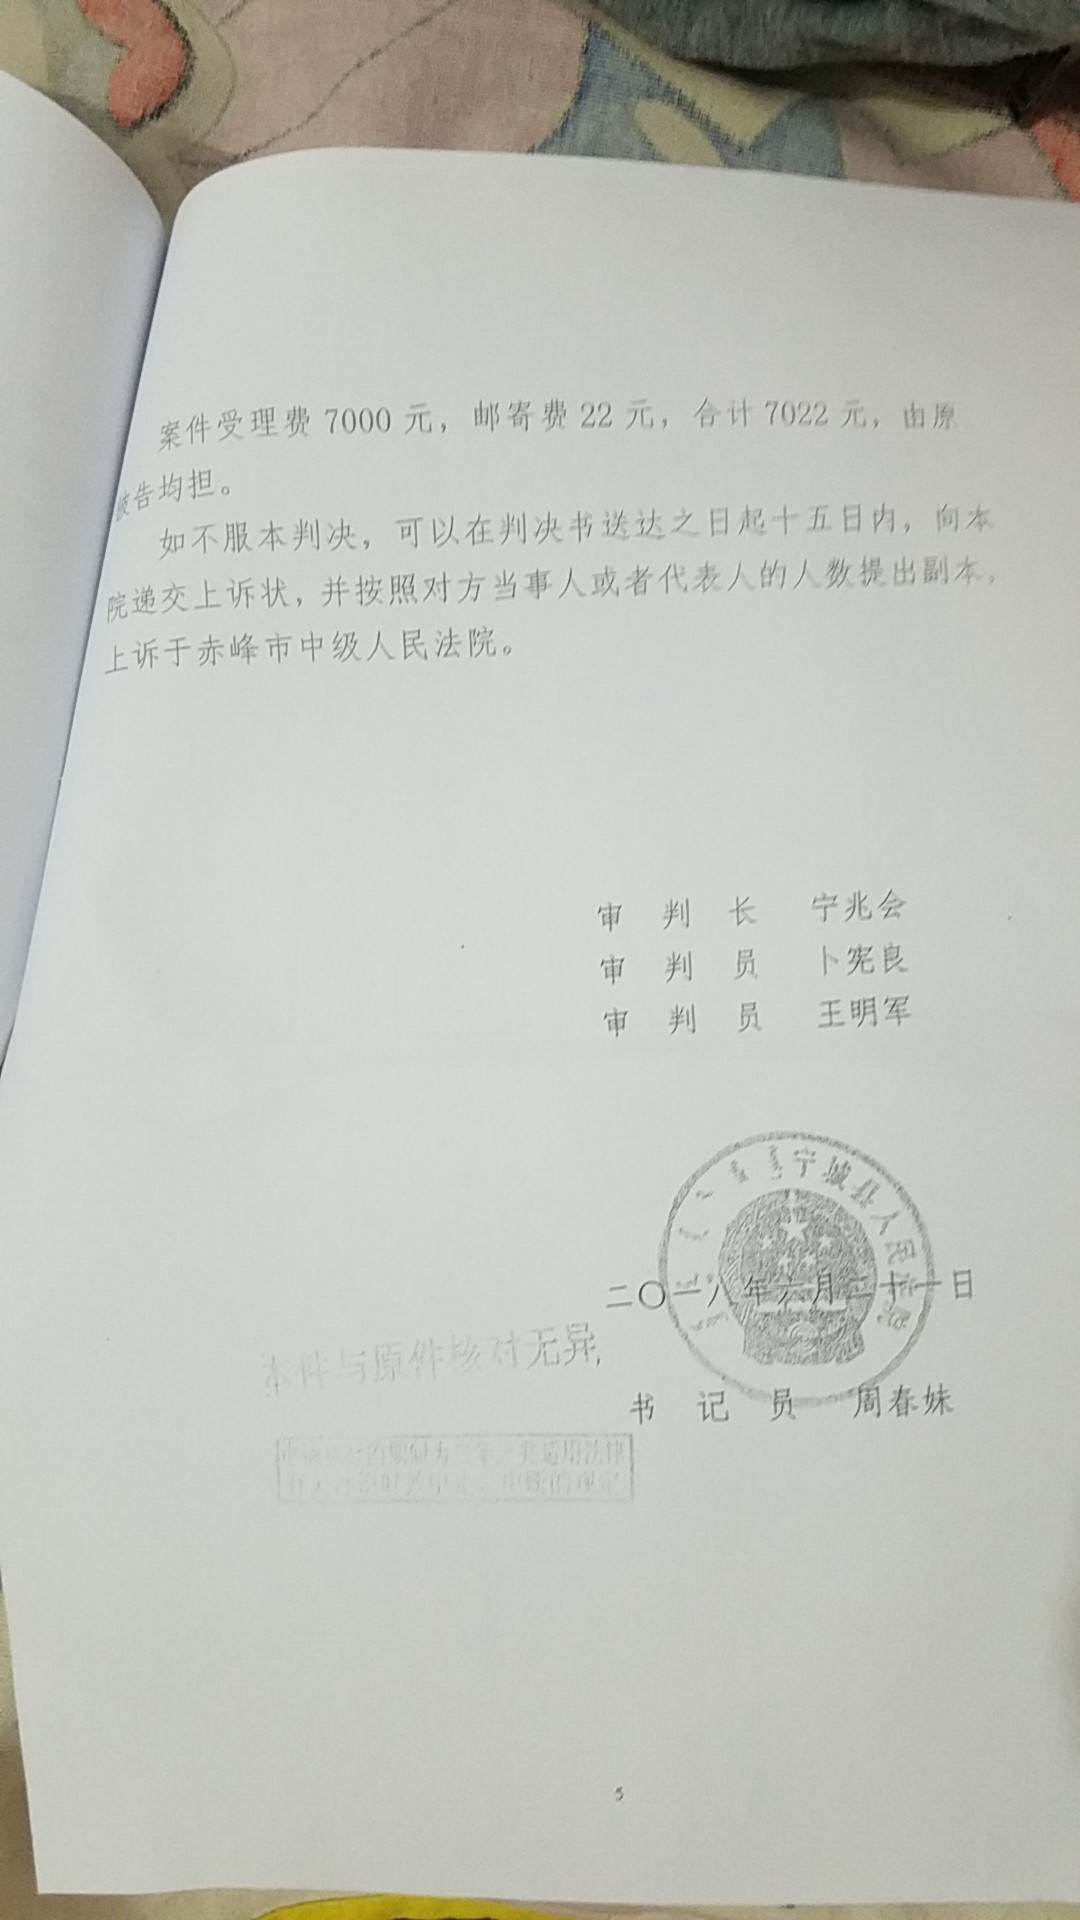 女子邮寄前夫陈定华的法院驳回其离婚判决(图)